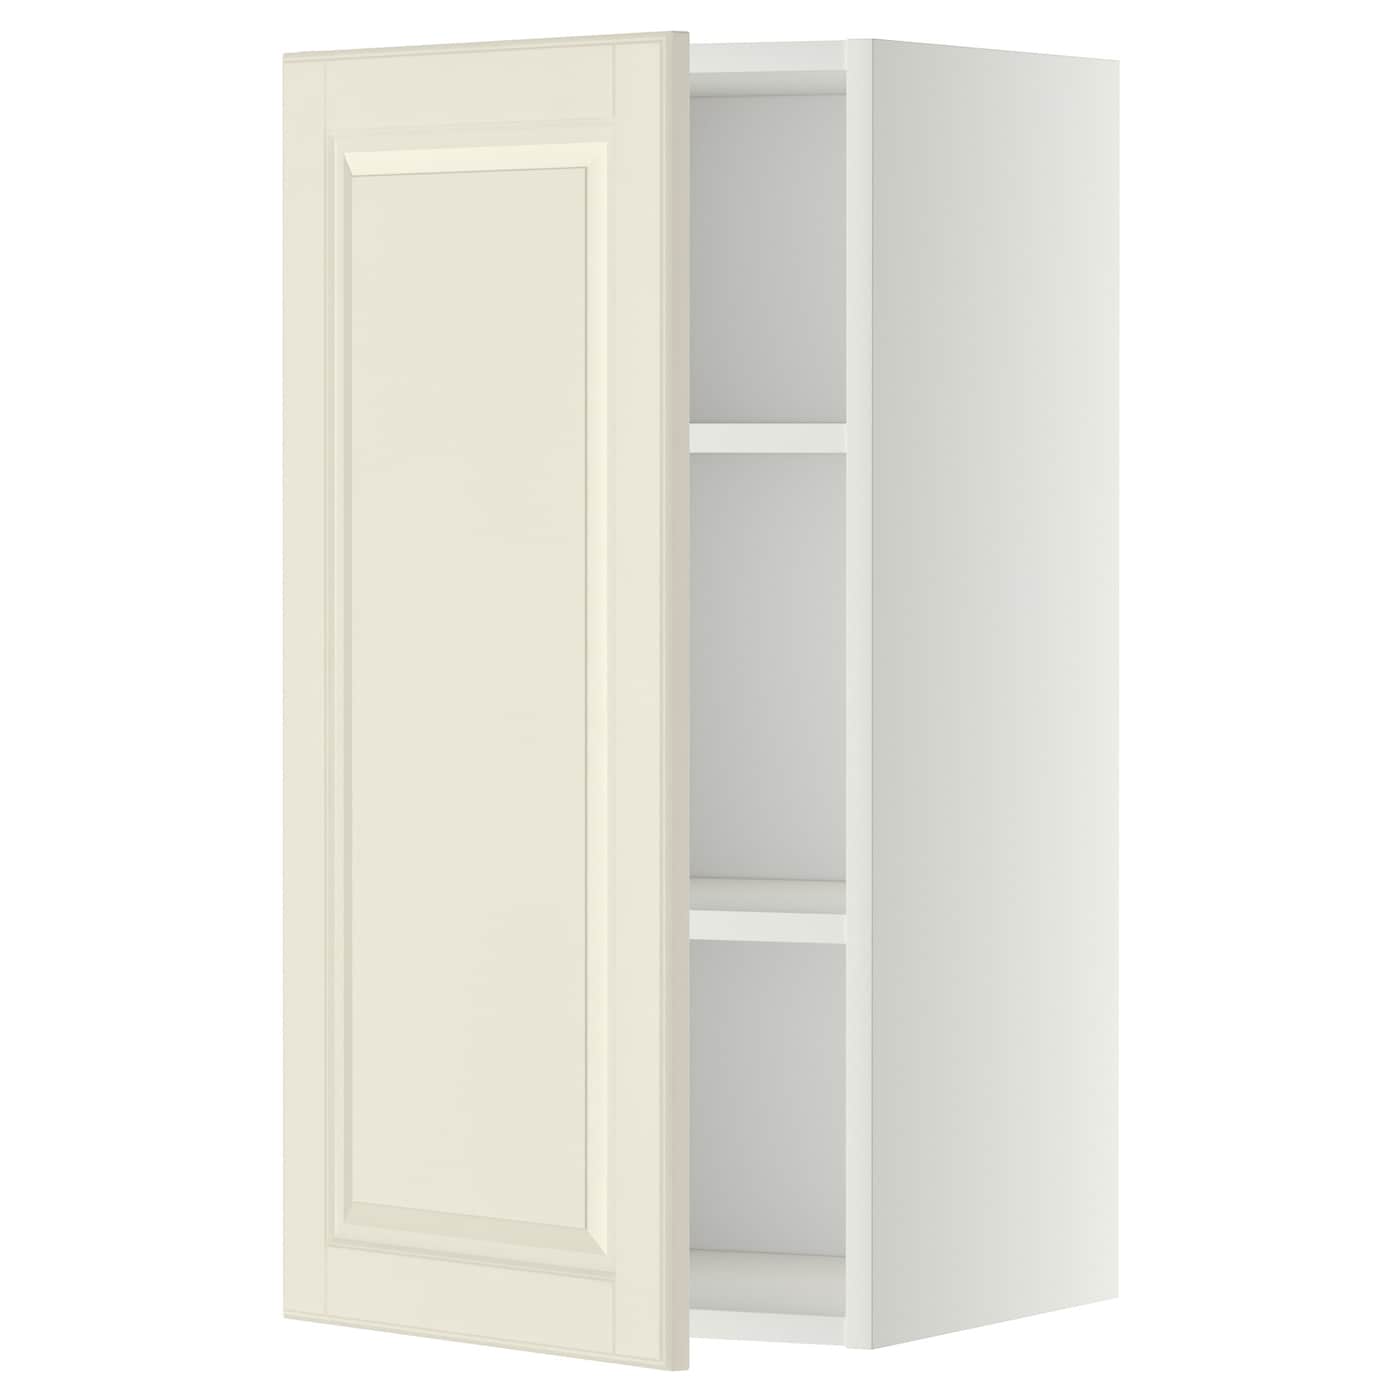 Навесной шкаф с полкой - METOD IKEA/ МЕТОД ИКЕА, 80х40 см, белый/кремовый